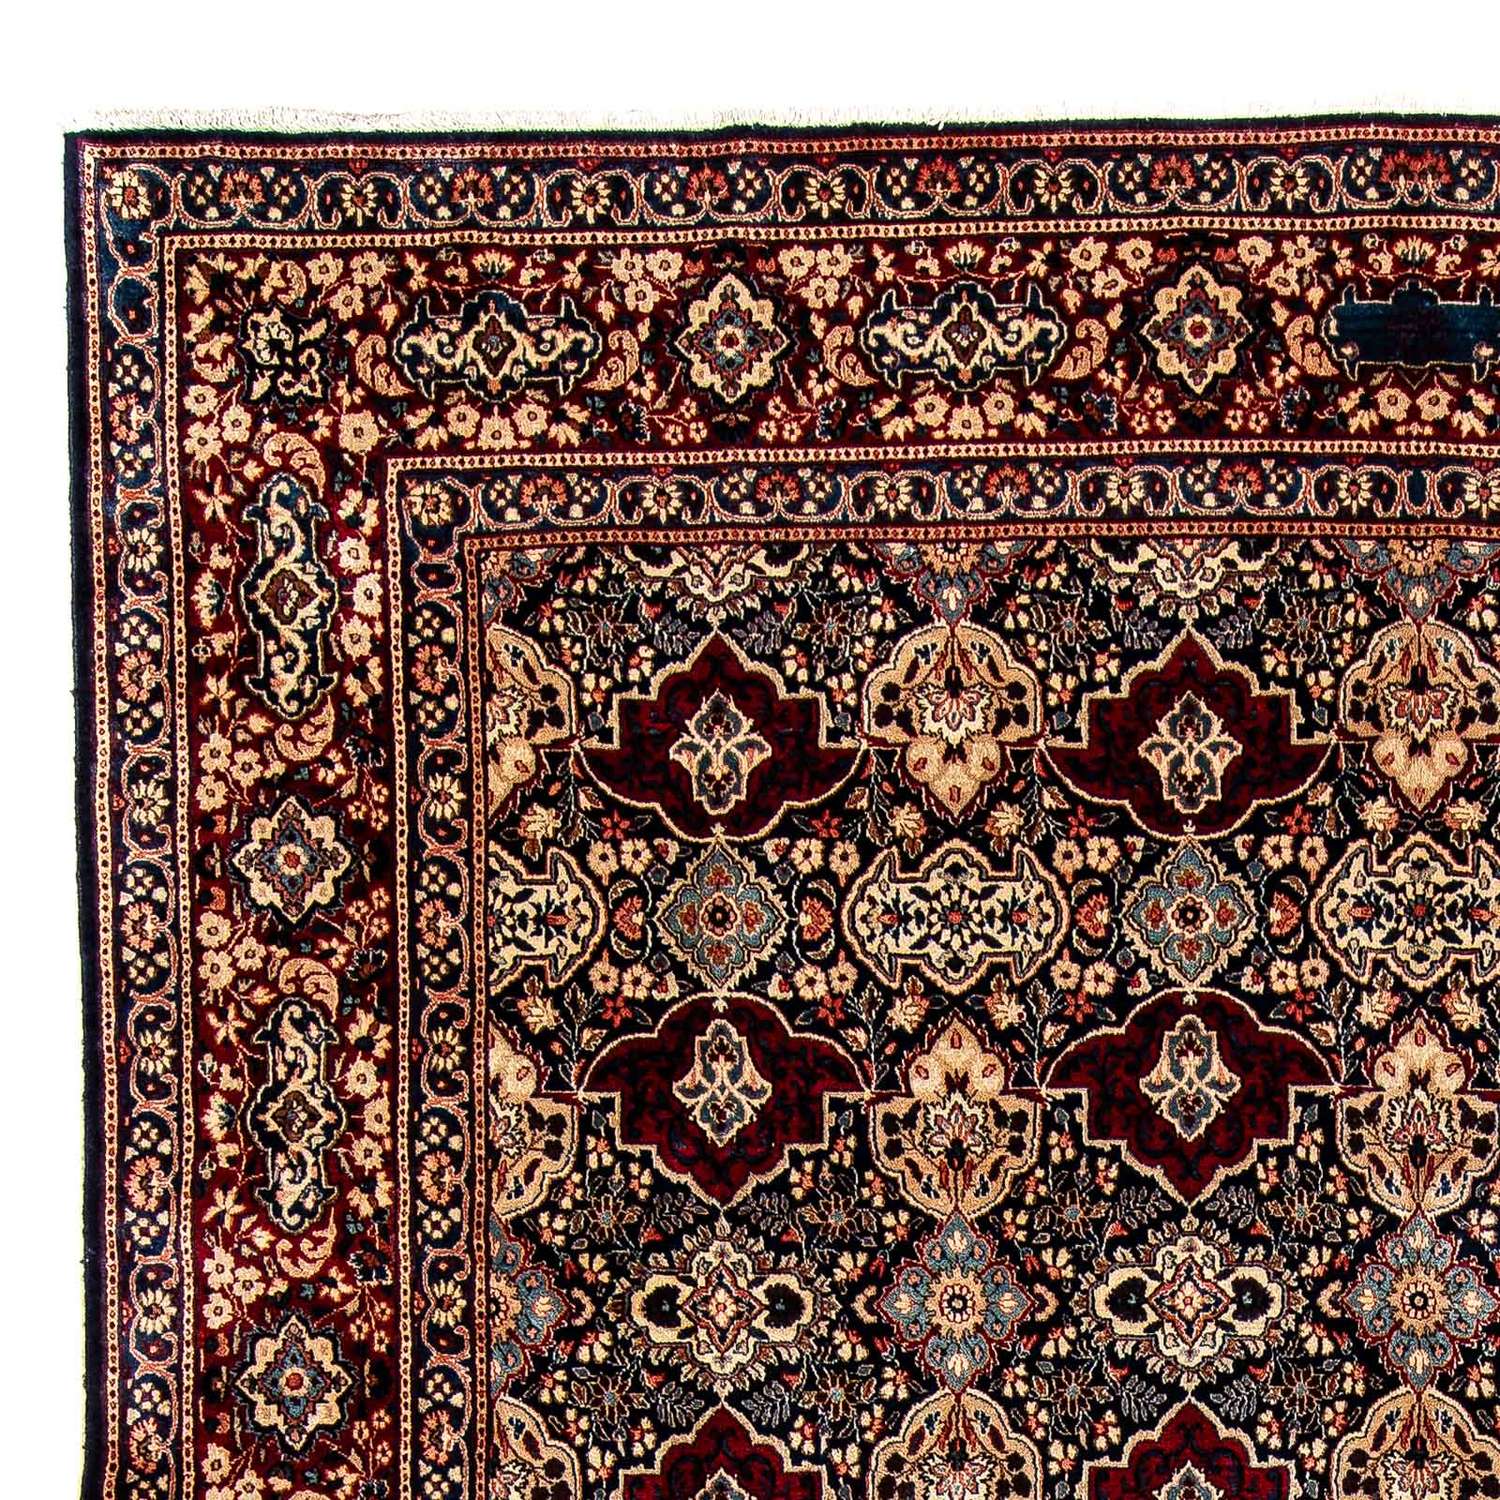 Tapis persan - Classique - 393 x 299 cm - rouge foncé